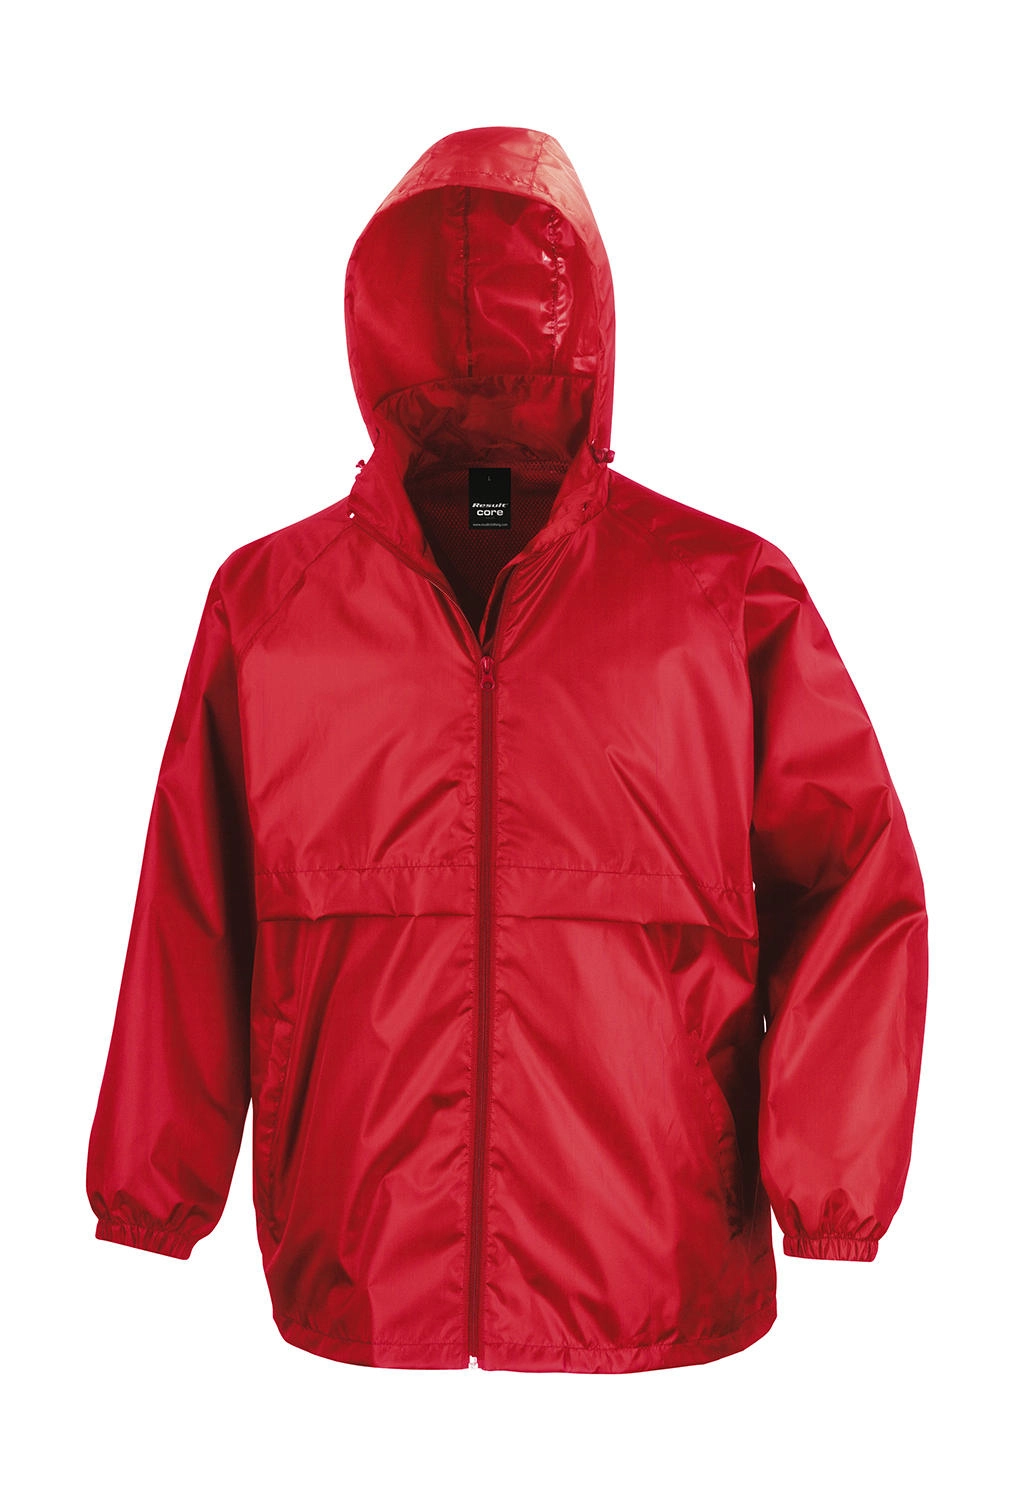 Lightweight Jacket zum Besticken und Bedrucken in der Farbe Red mit Ihren Logo, Schriftzug oder Motiv.